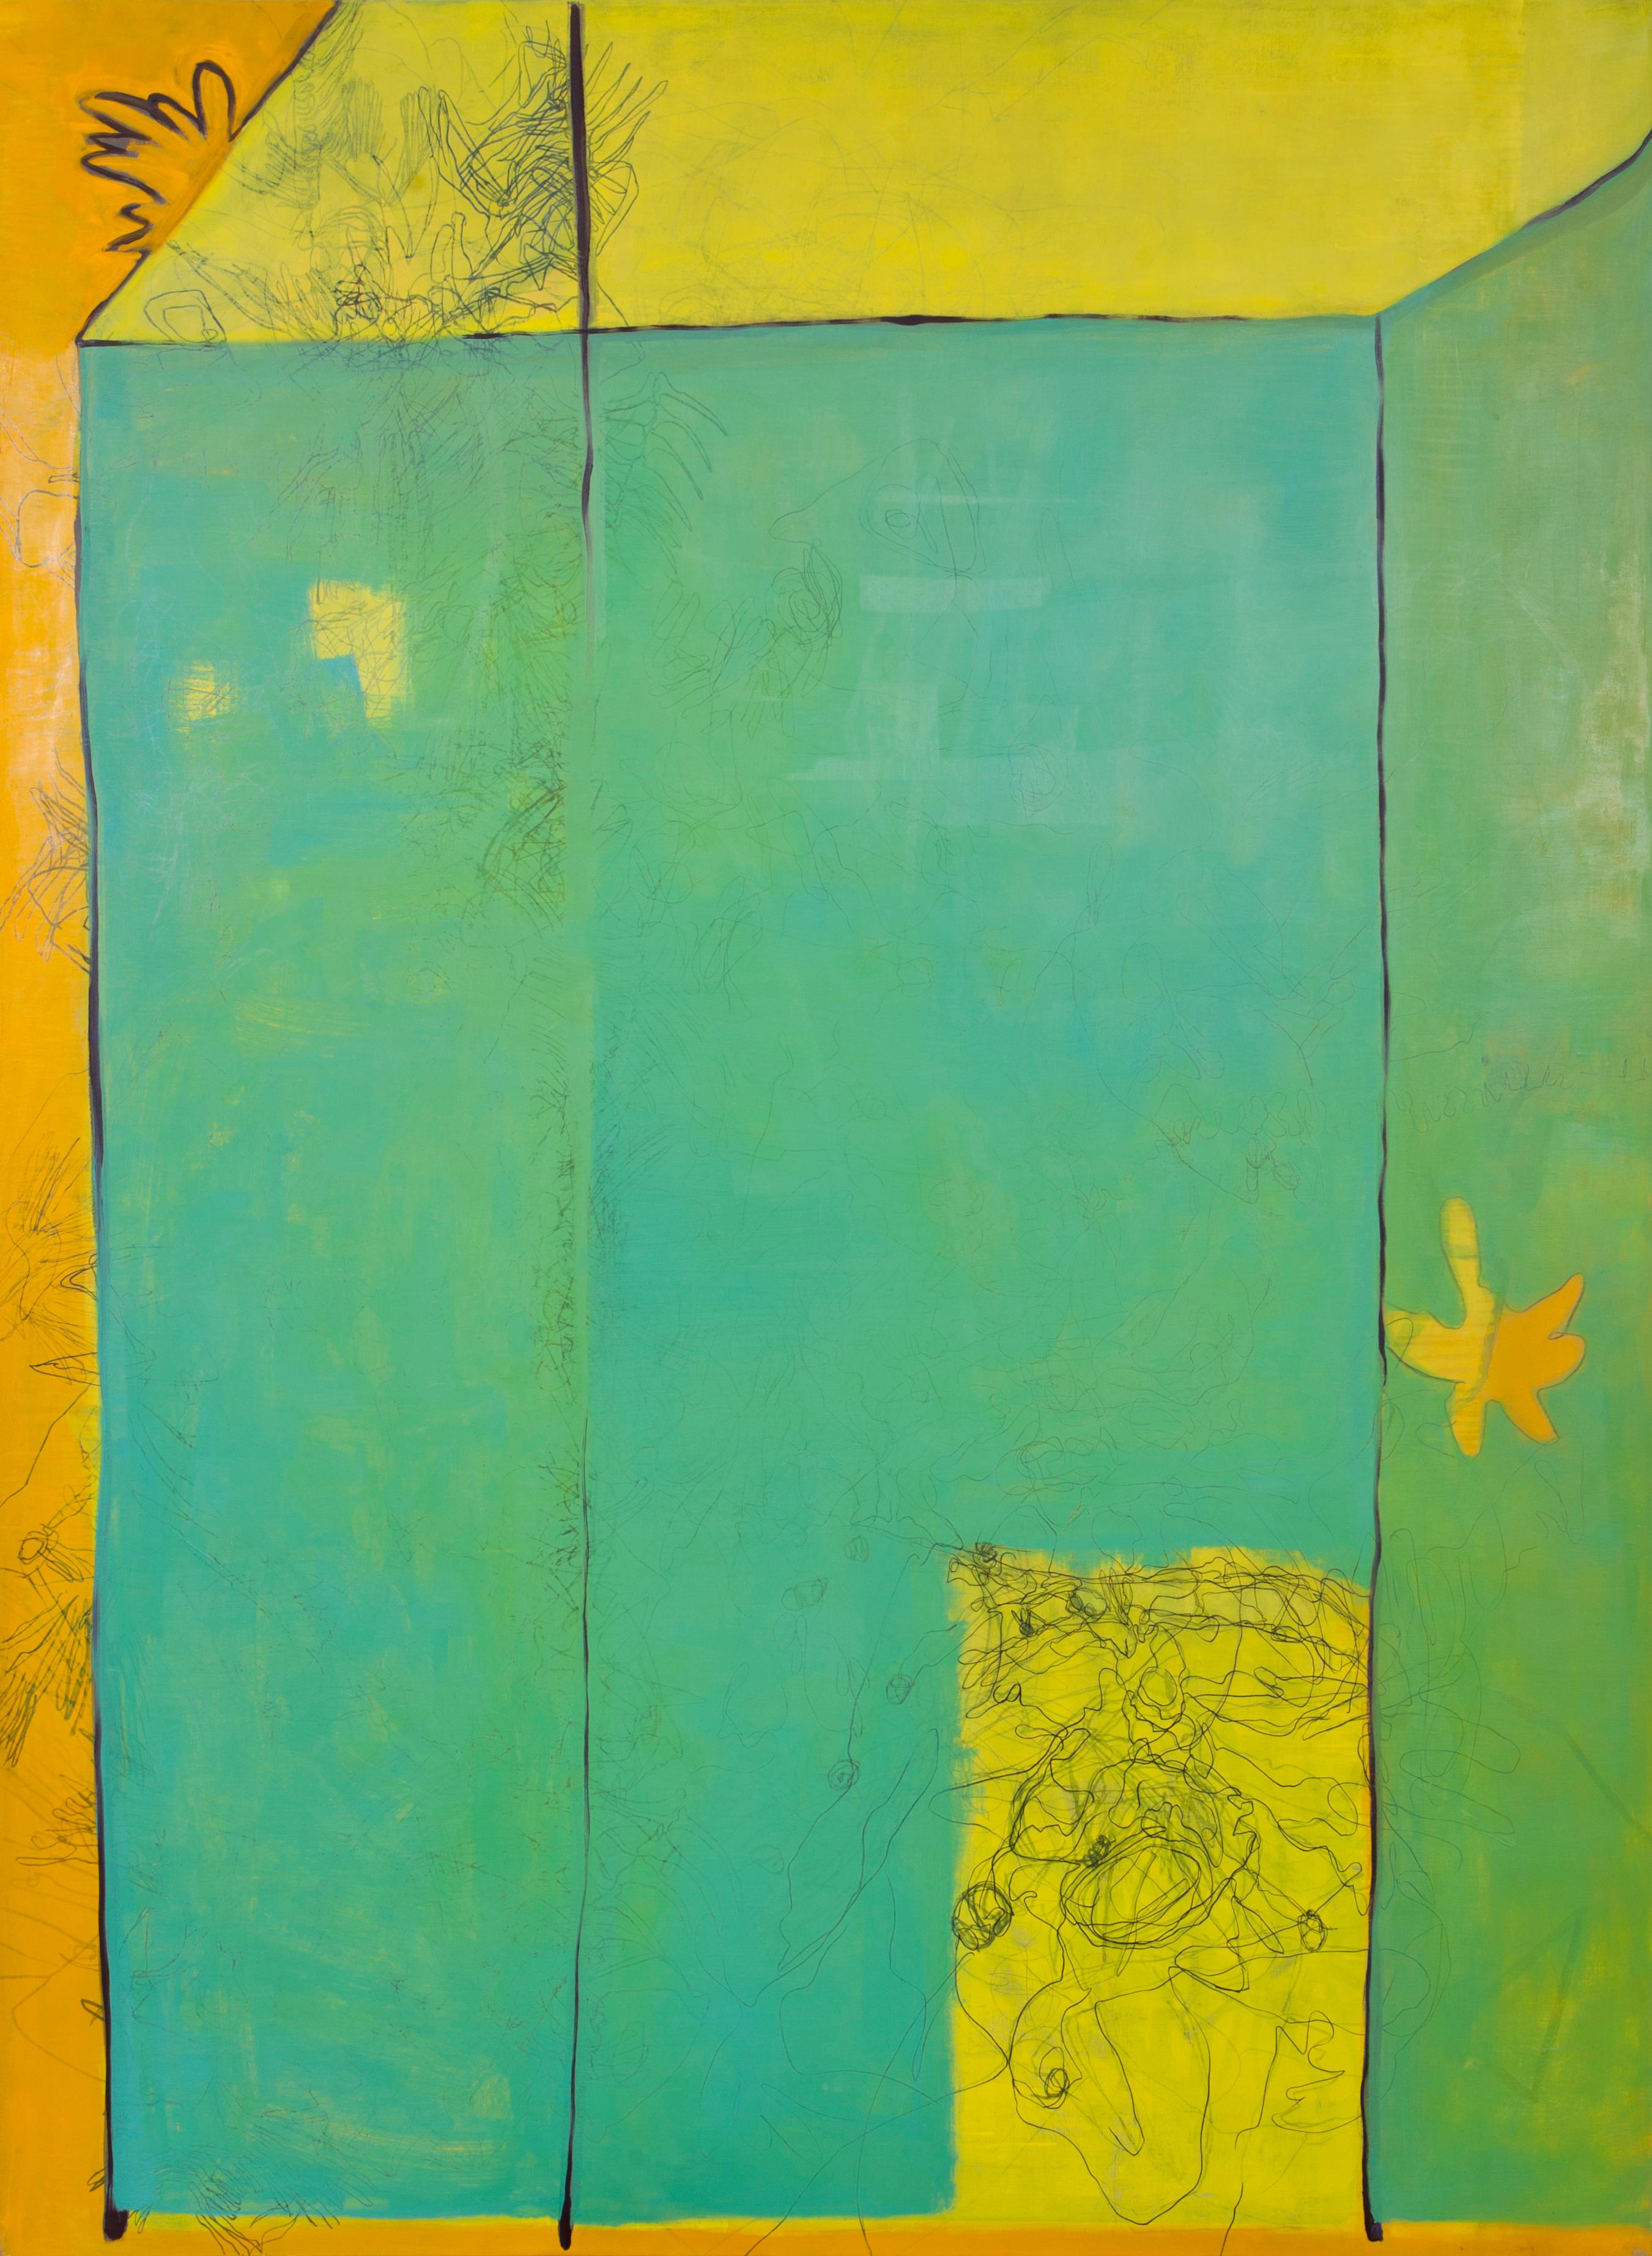 Paula Cahill Abstract Painting – No Diving: Großes zeitgenössisches abstraktes Gemälde in Grün, Gelb und Orange